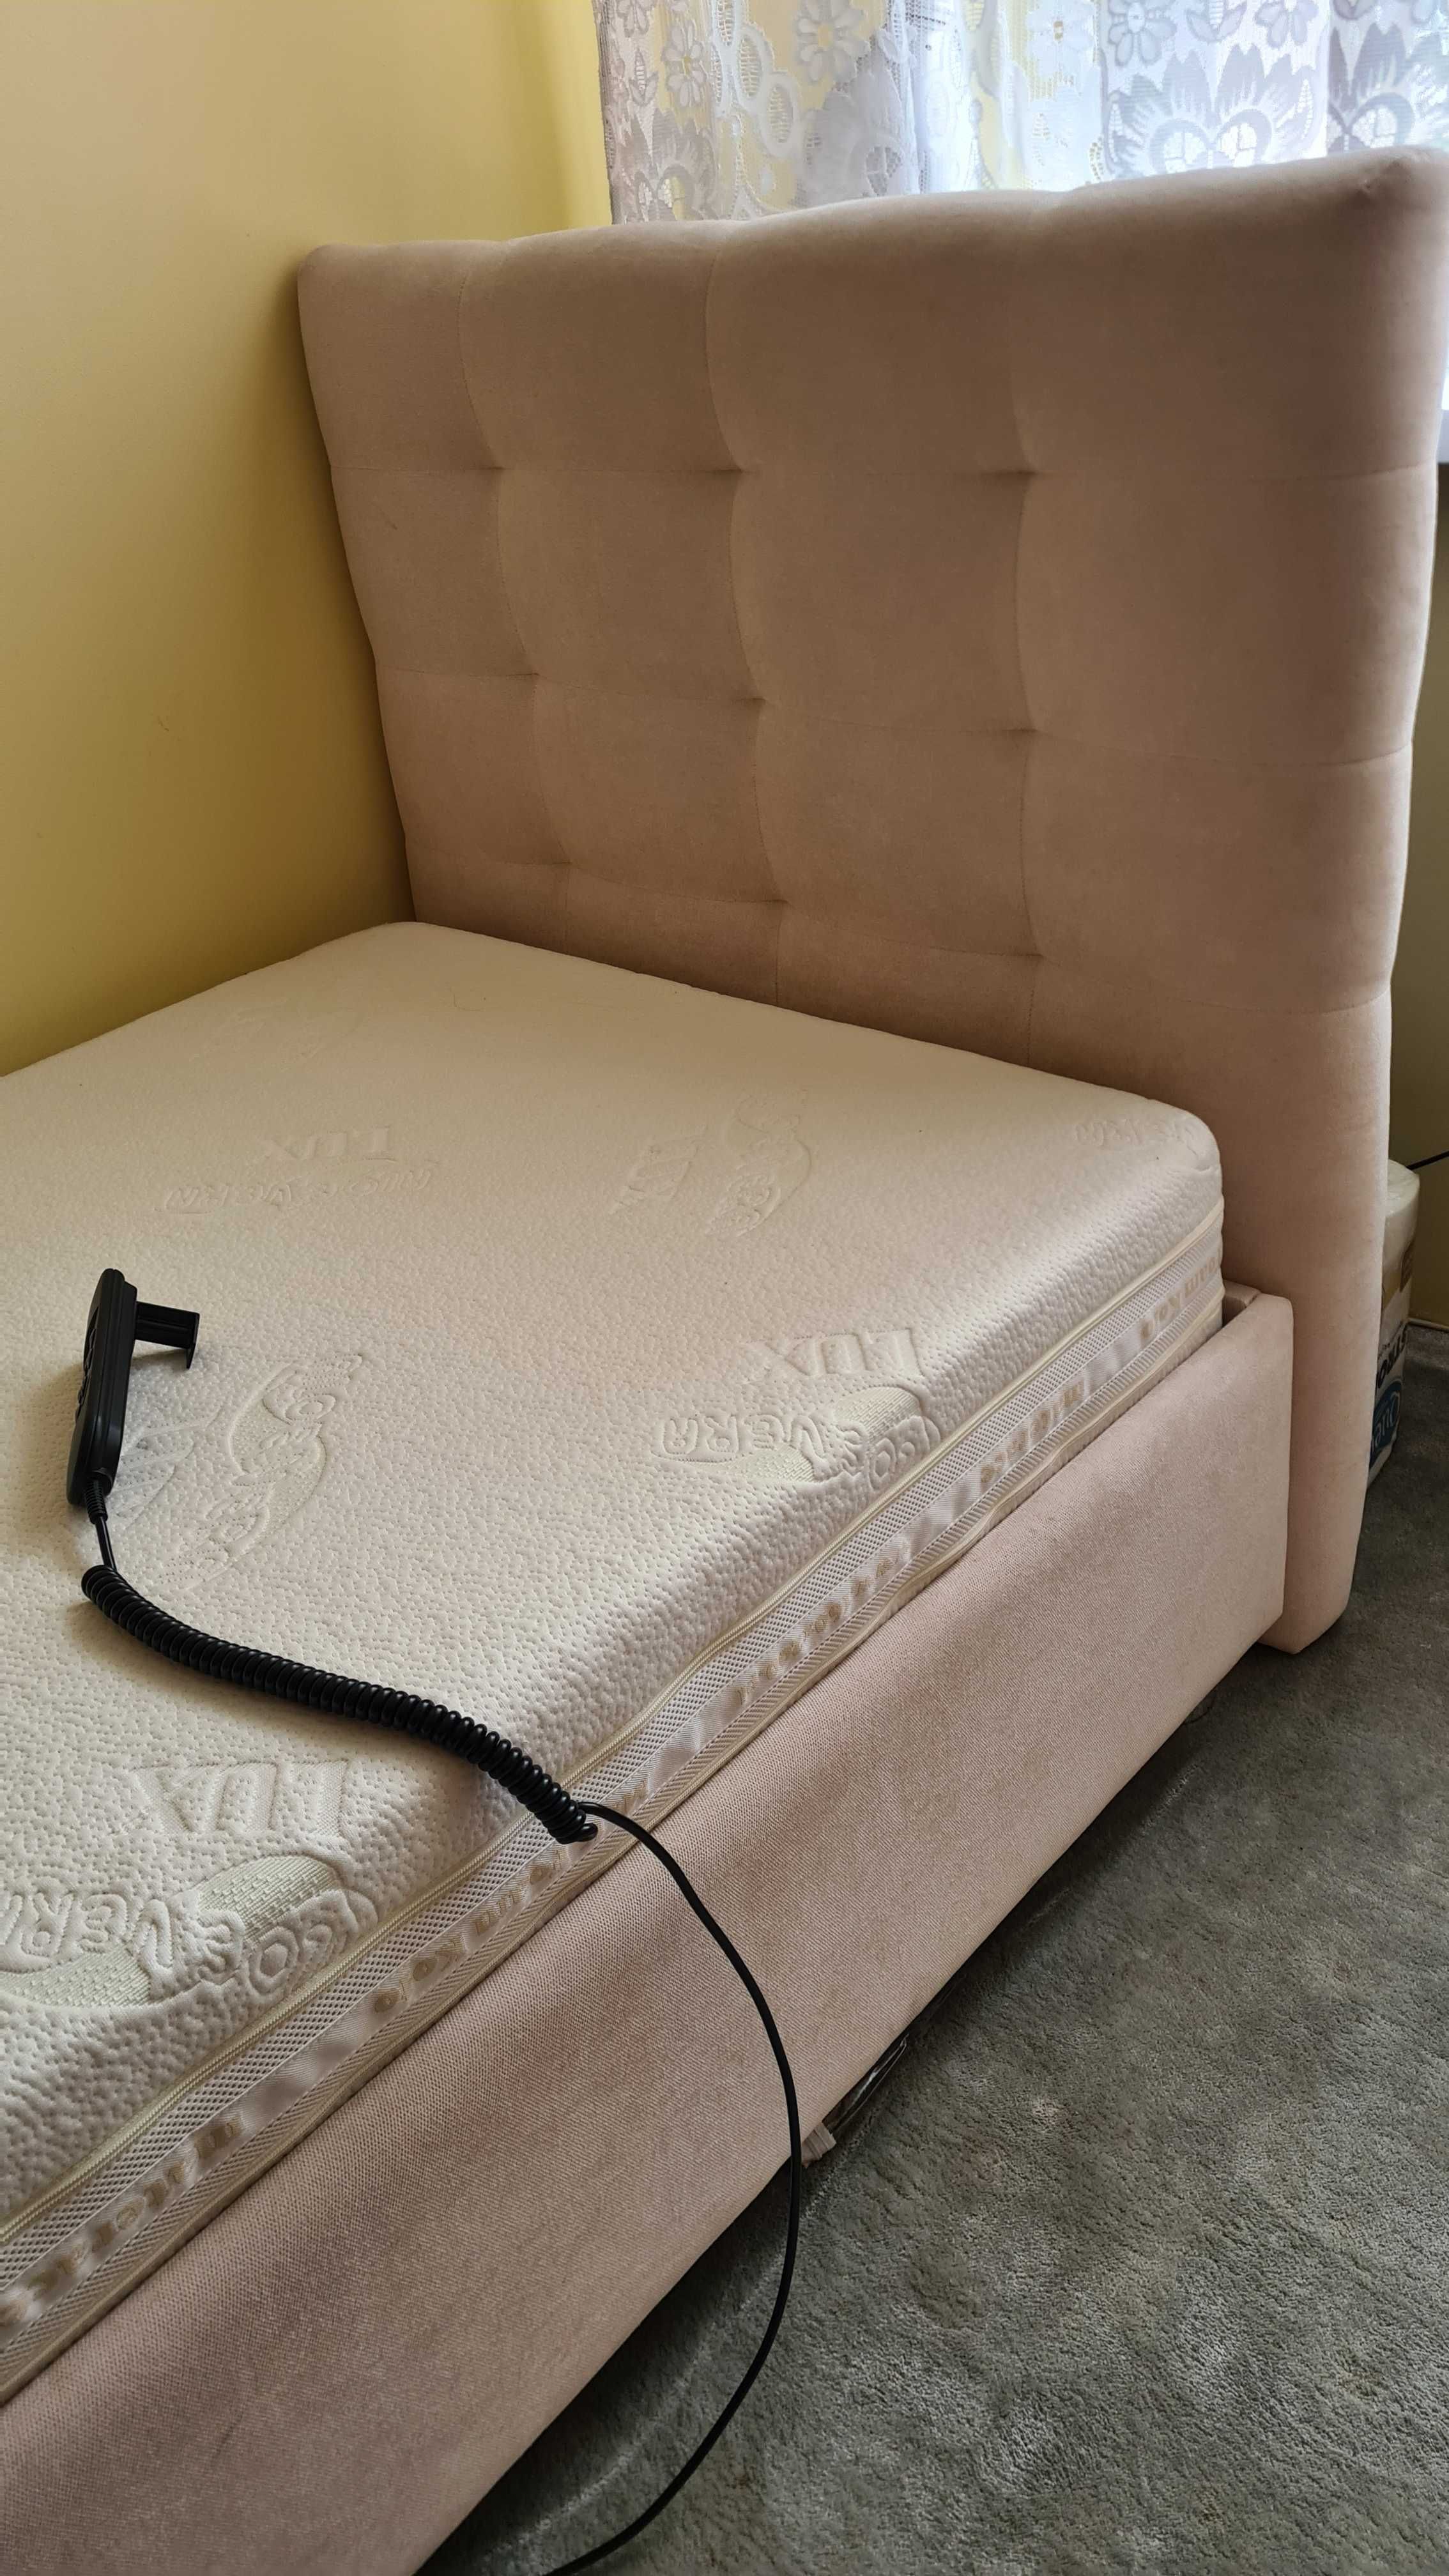 Łóżko M&K Koło - elektrycznie sterowane